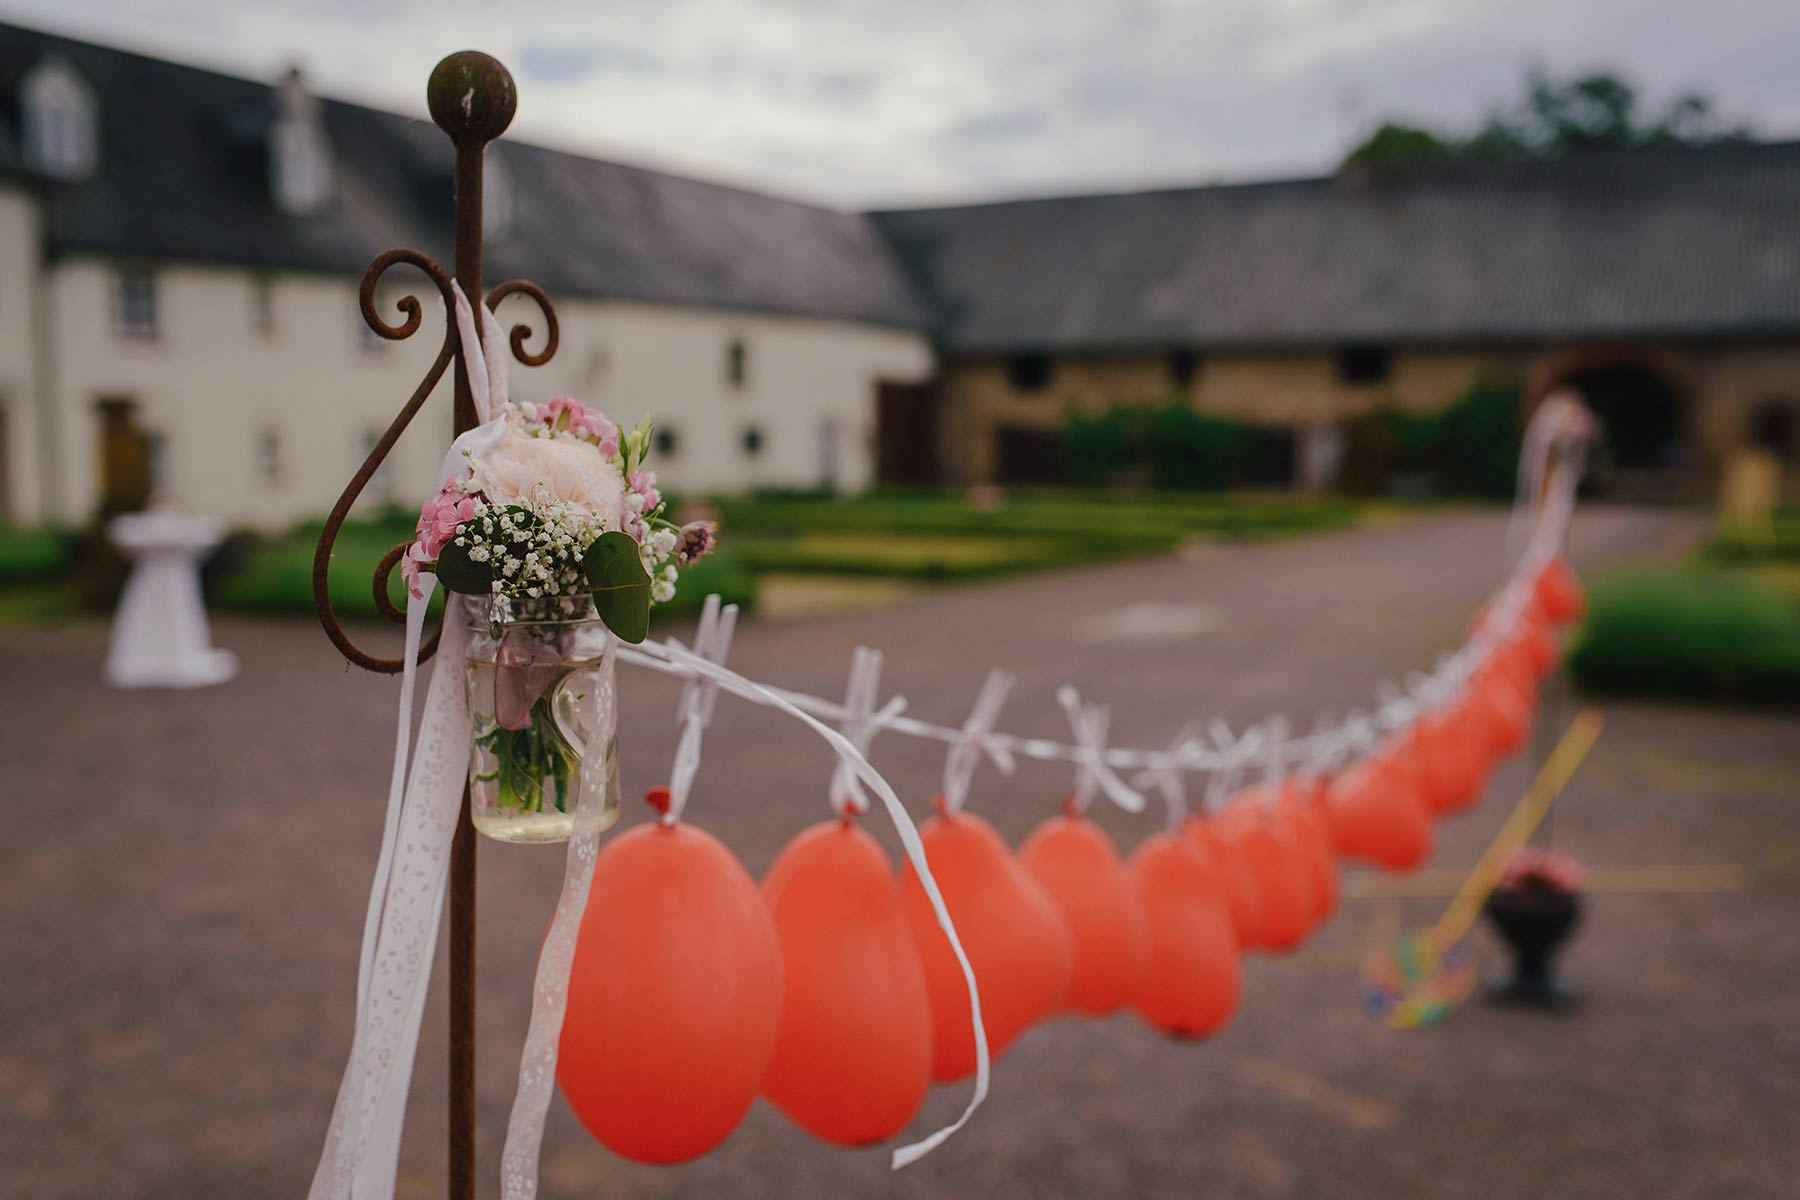 Ballonstechen Als Hochzeitsspiel Für Braut Und Bräutigam bestimmt für Hochzeitsspiel Luftballons Zerstechen